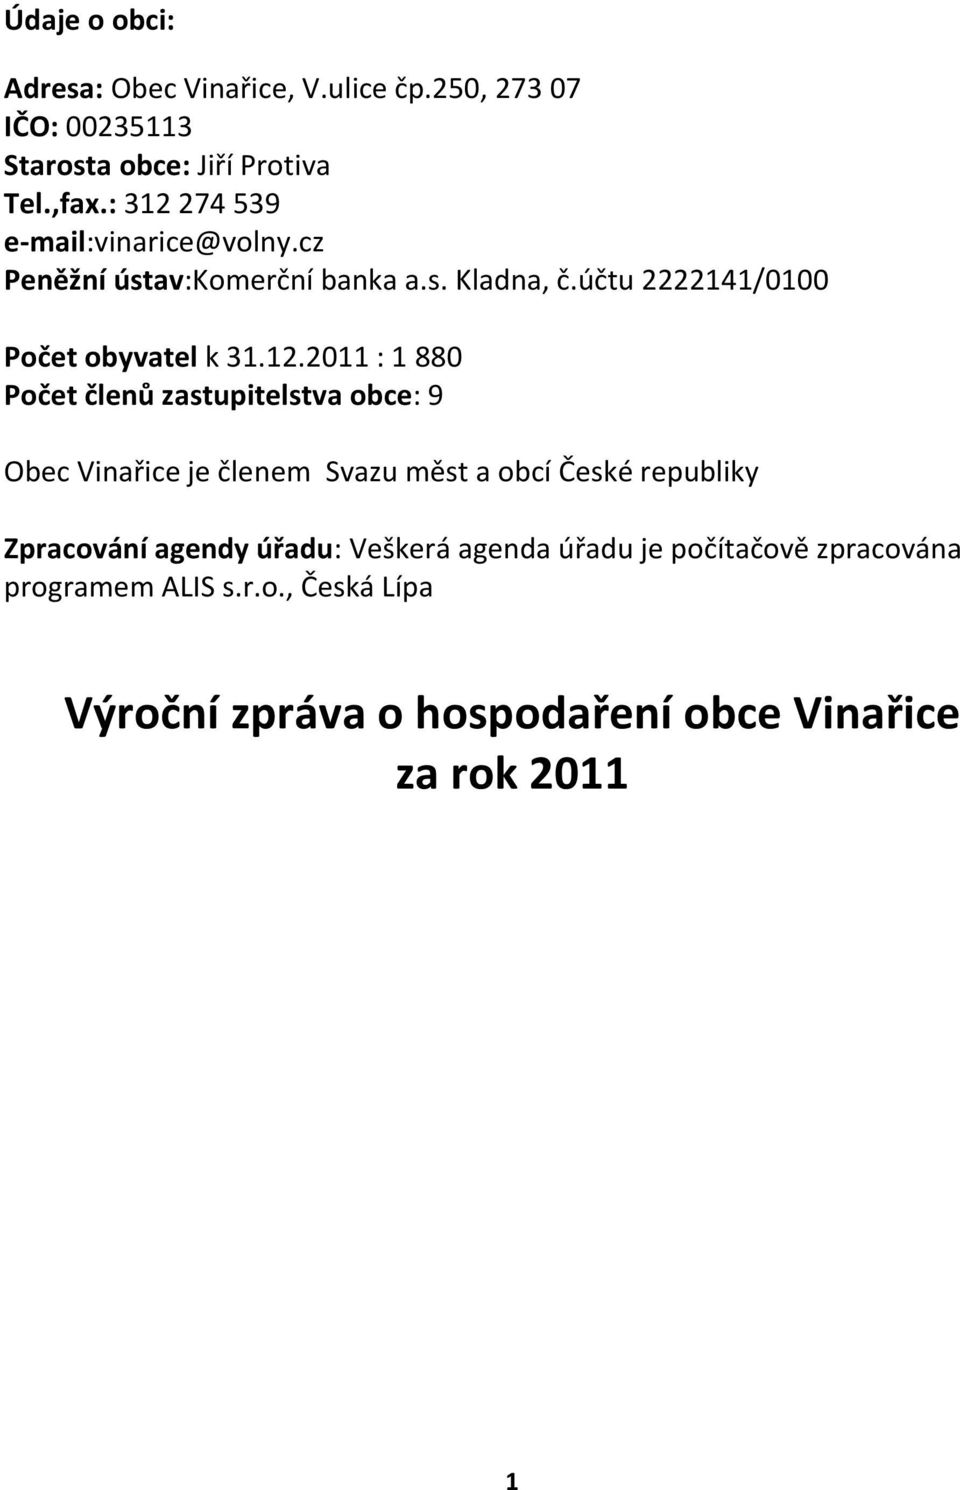 274 539 e-mail:vinarice@volny.cz Peněžní ústav:komerční banka a.s. Kladna, č.účtu 2222141/0100 Počet obyvatel k 31.12.